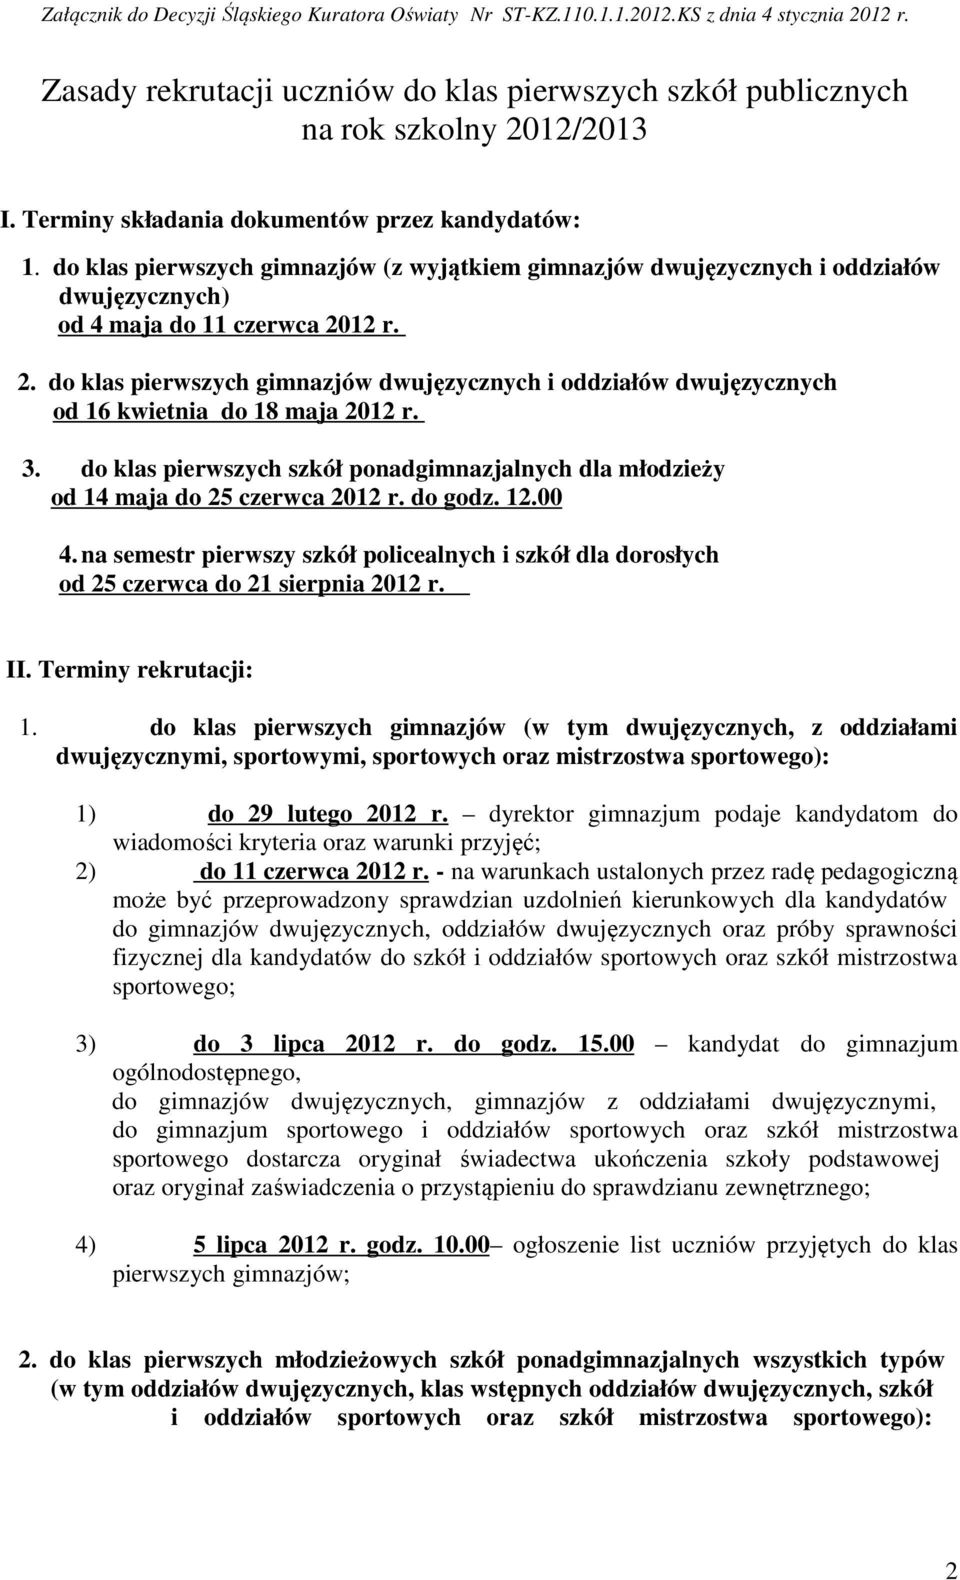 12 r. 2. do klas pierwszych gimnazjów dwujęzycznych i oddziałów dwujęzycznych od 16 kwietnia do 18 maja 2012 r. 3.